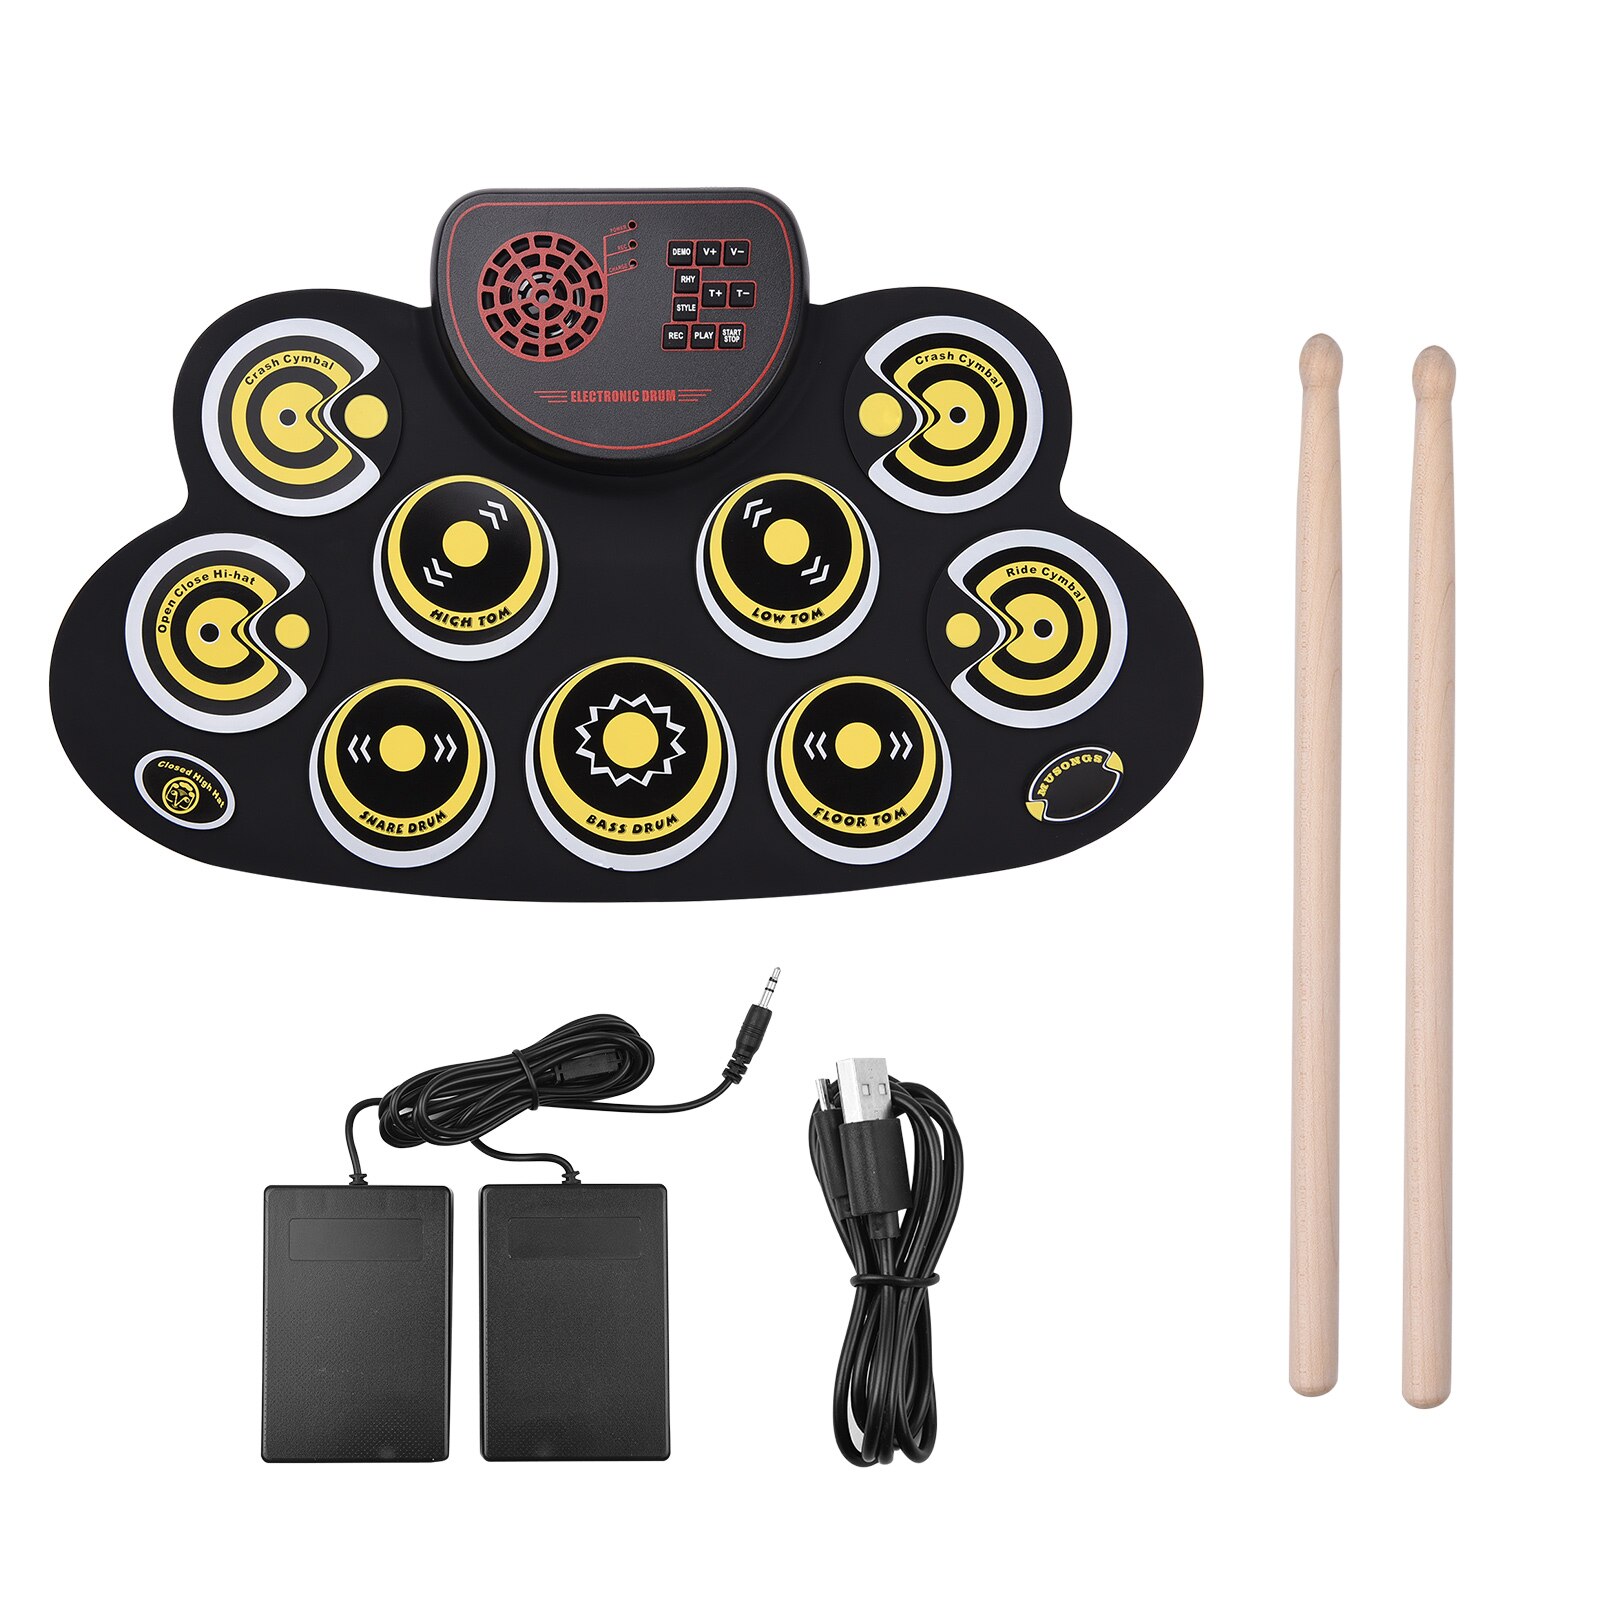 Draagbare Roll-Up Electronic Drum Pad Digitale Drum 9 Demo Songs Microfoon Ingang Hoofdtelefoon Monitoring Externe Luidspreker Uitgang